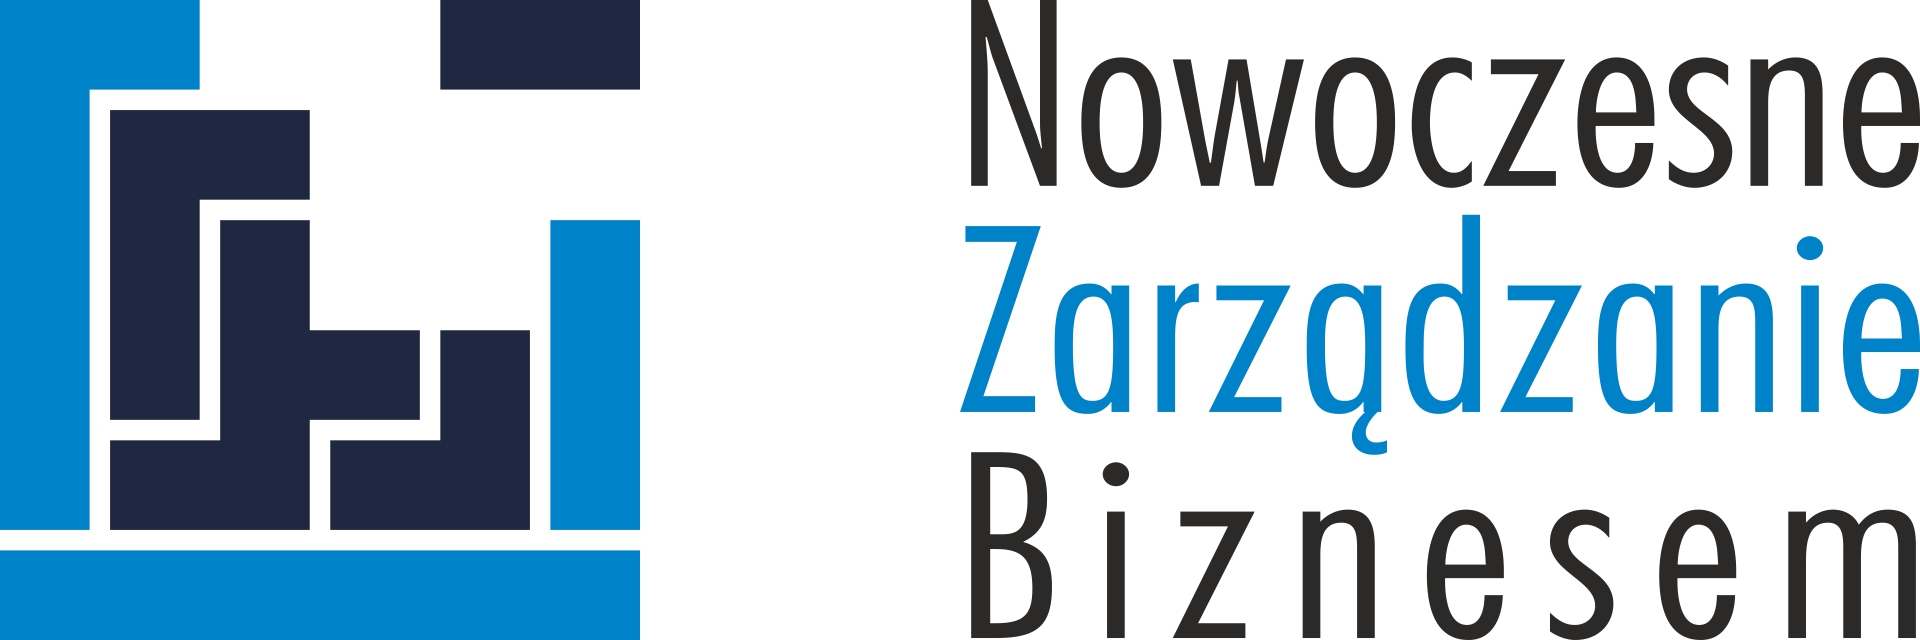 Nowoczesne Zarządzanie Biznesem – stare logo, nowe 230328